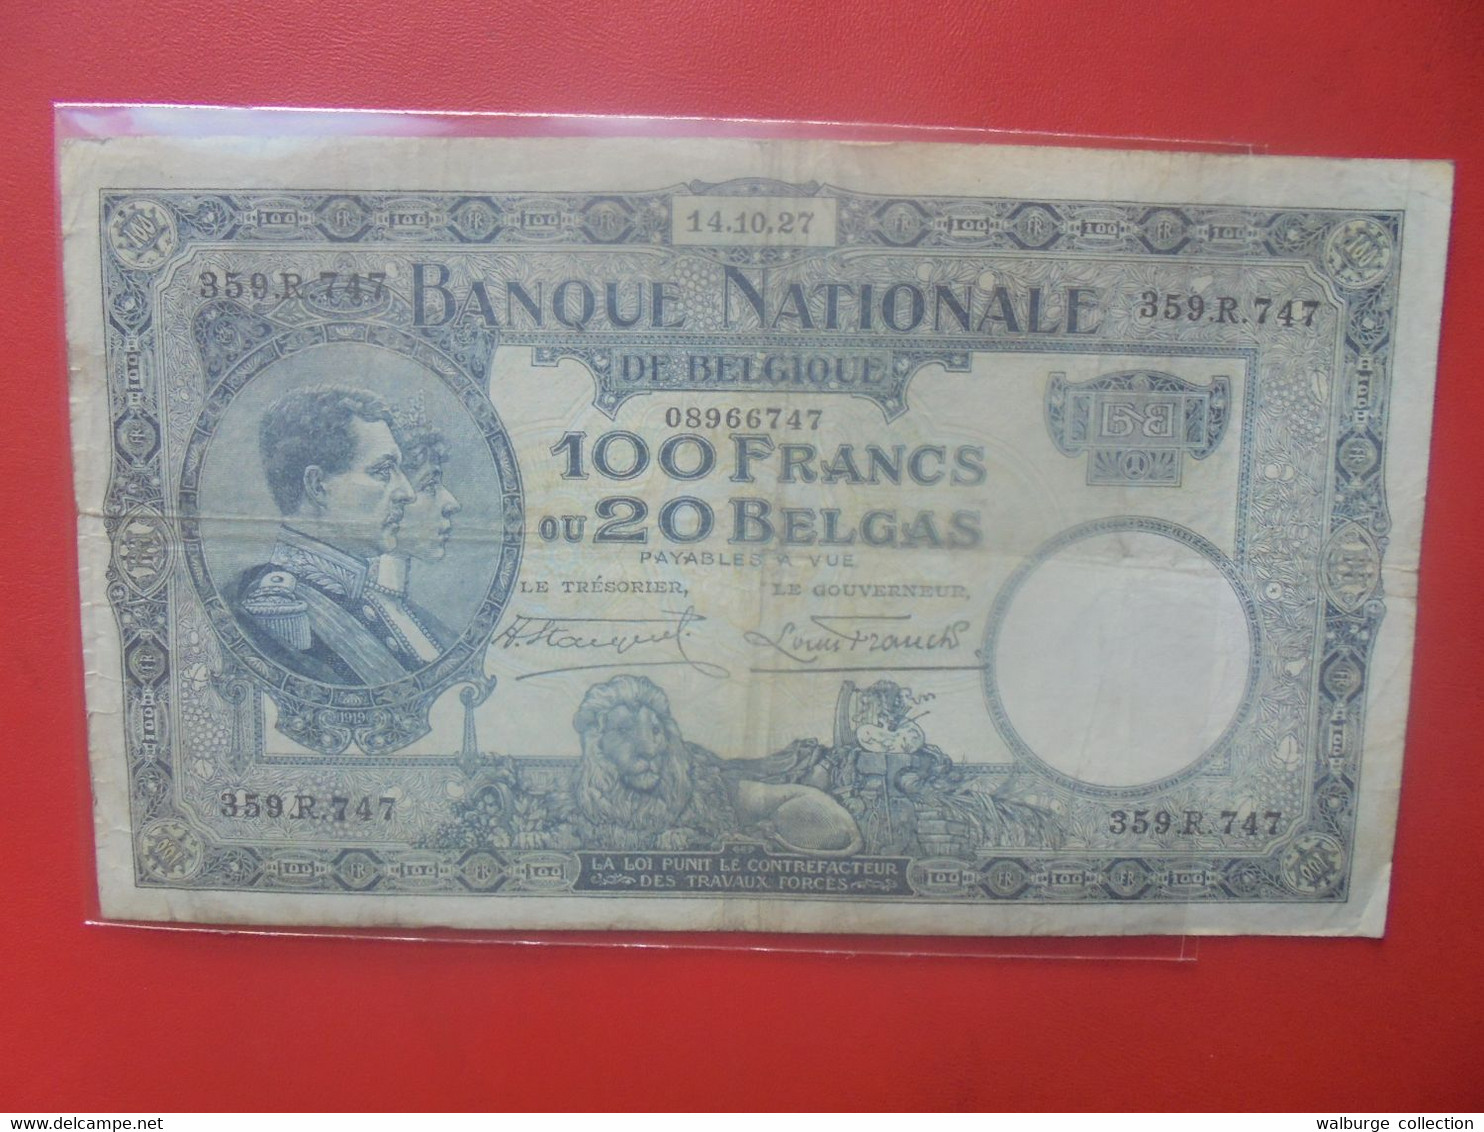 BELGIQUE 100 FRANCS 14-10-27 Circuler (B.26) - 100 Francos & 100 Francos-20 Belgas